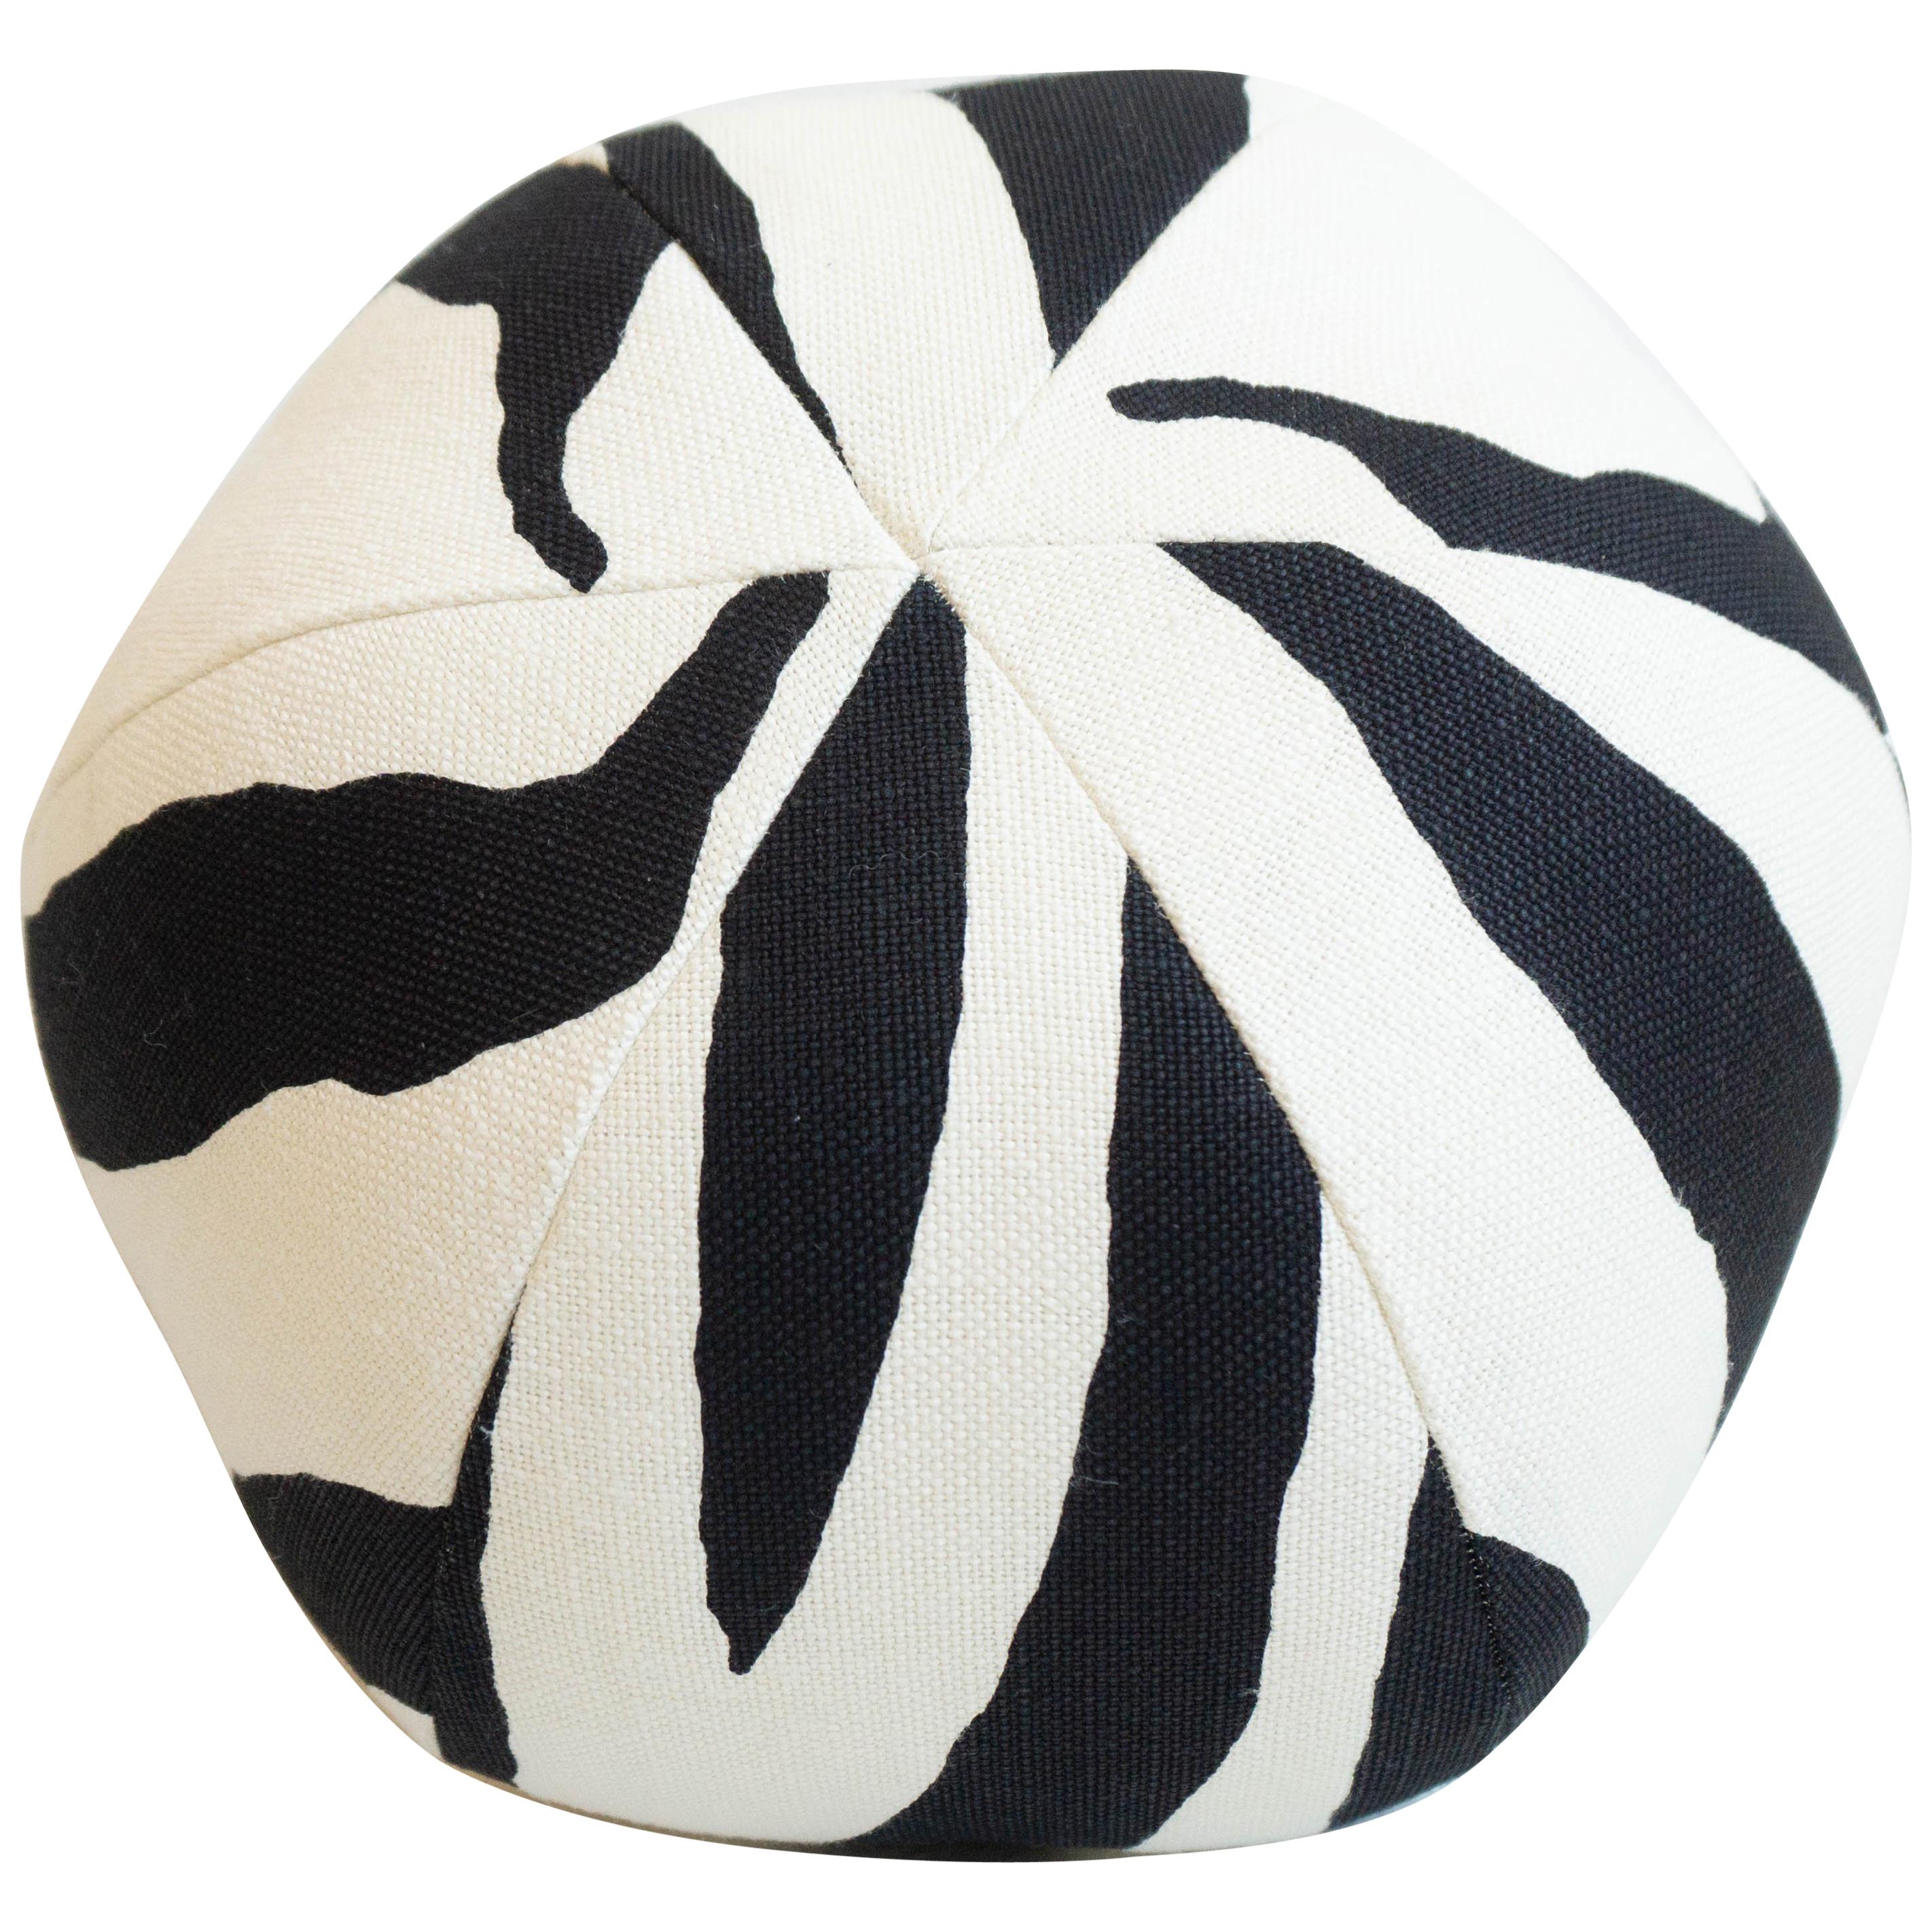 Round Ball Throw Pillow In Zebra Print, Round Ball Pillows